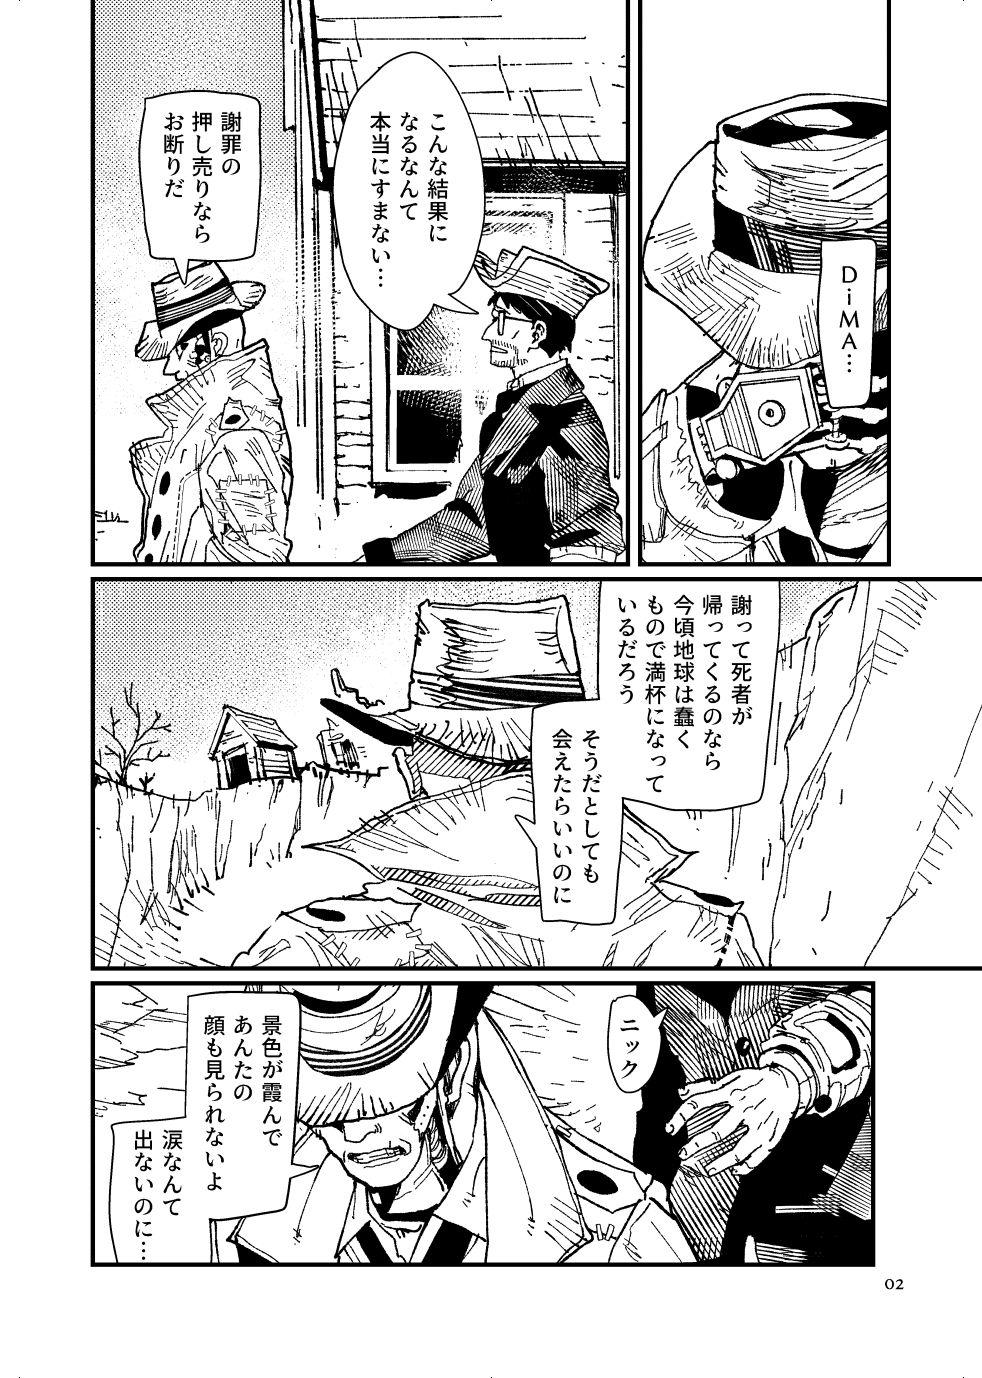 [Tanokura] FO4 [R18] Dimaniku Manga 3